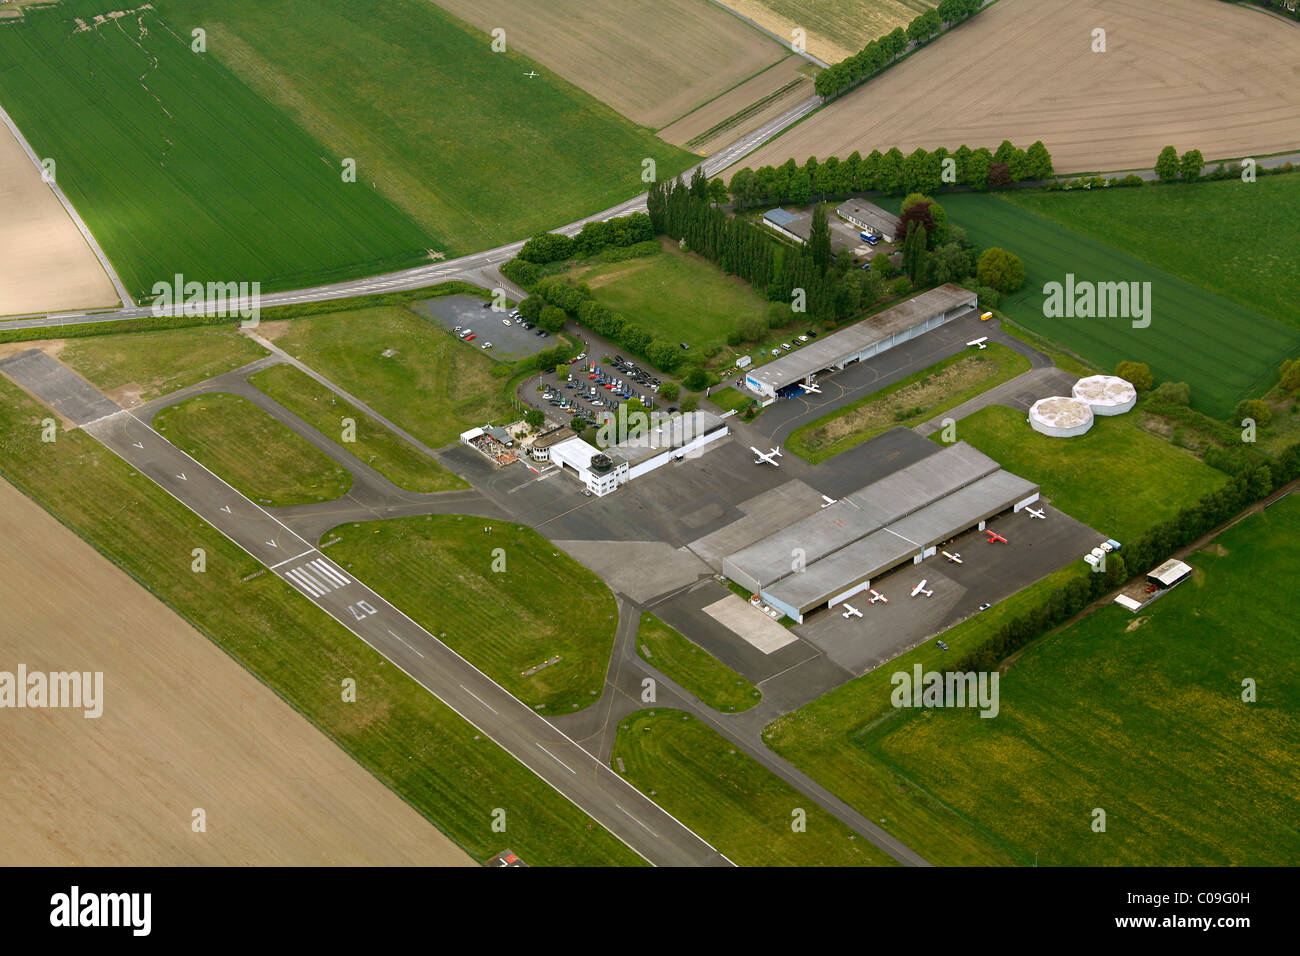 Vista aérea, avión hangar, Aviación General aeródromo aeródromo, pista EDLM margas, margas, región Ruhrgebiet Foto de stock